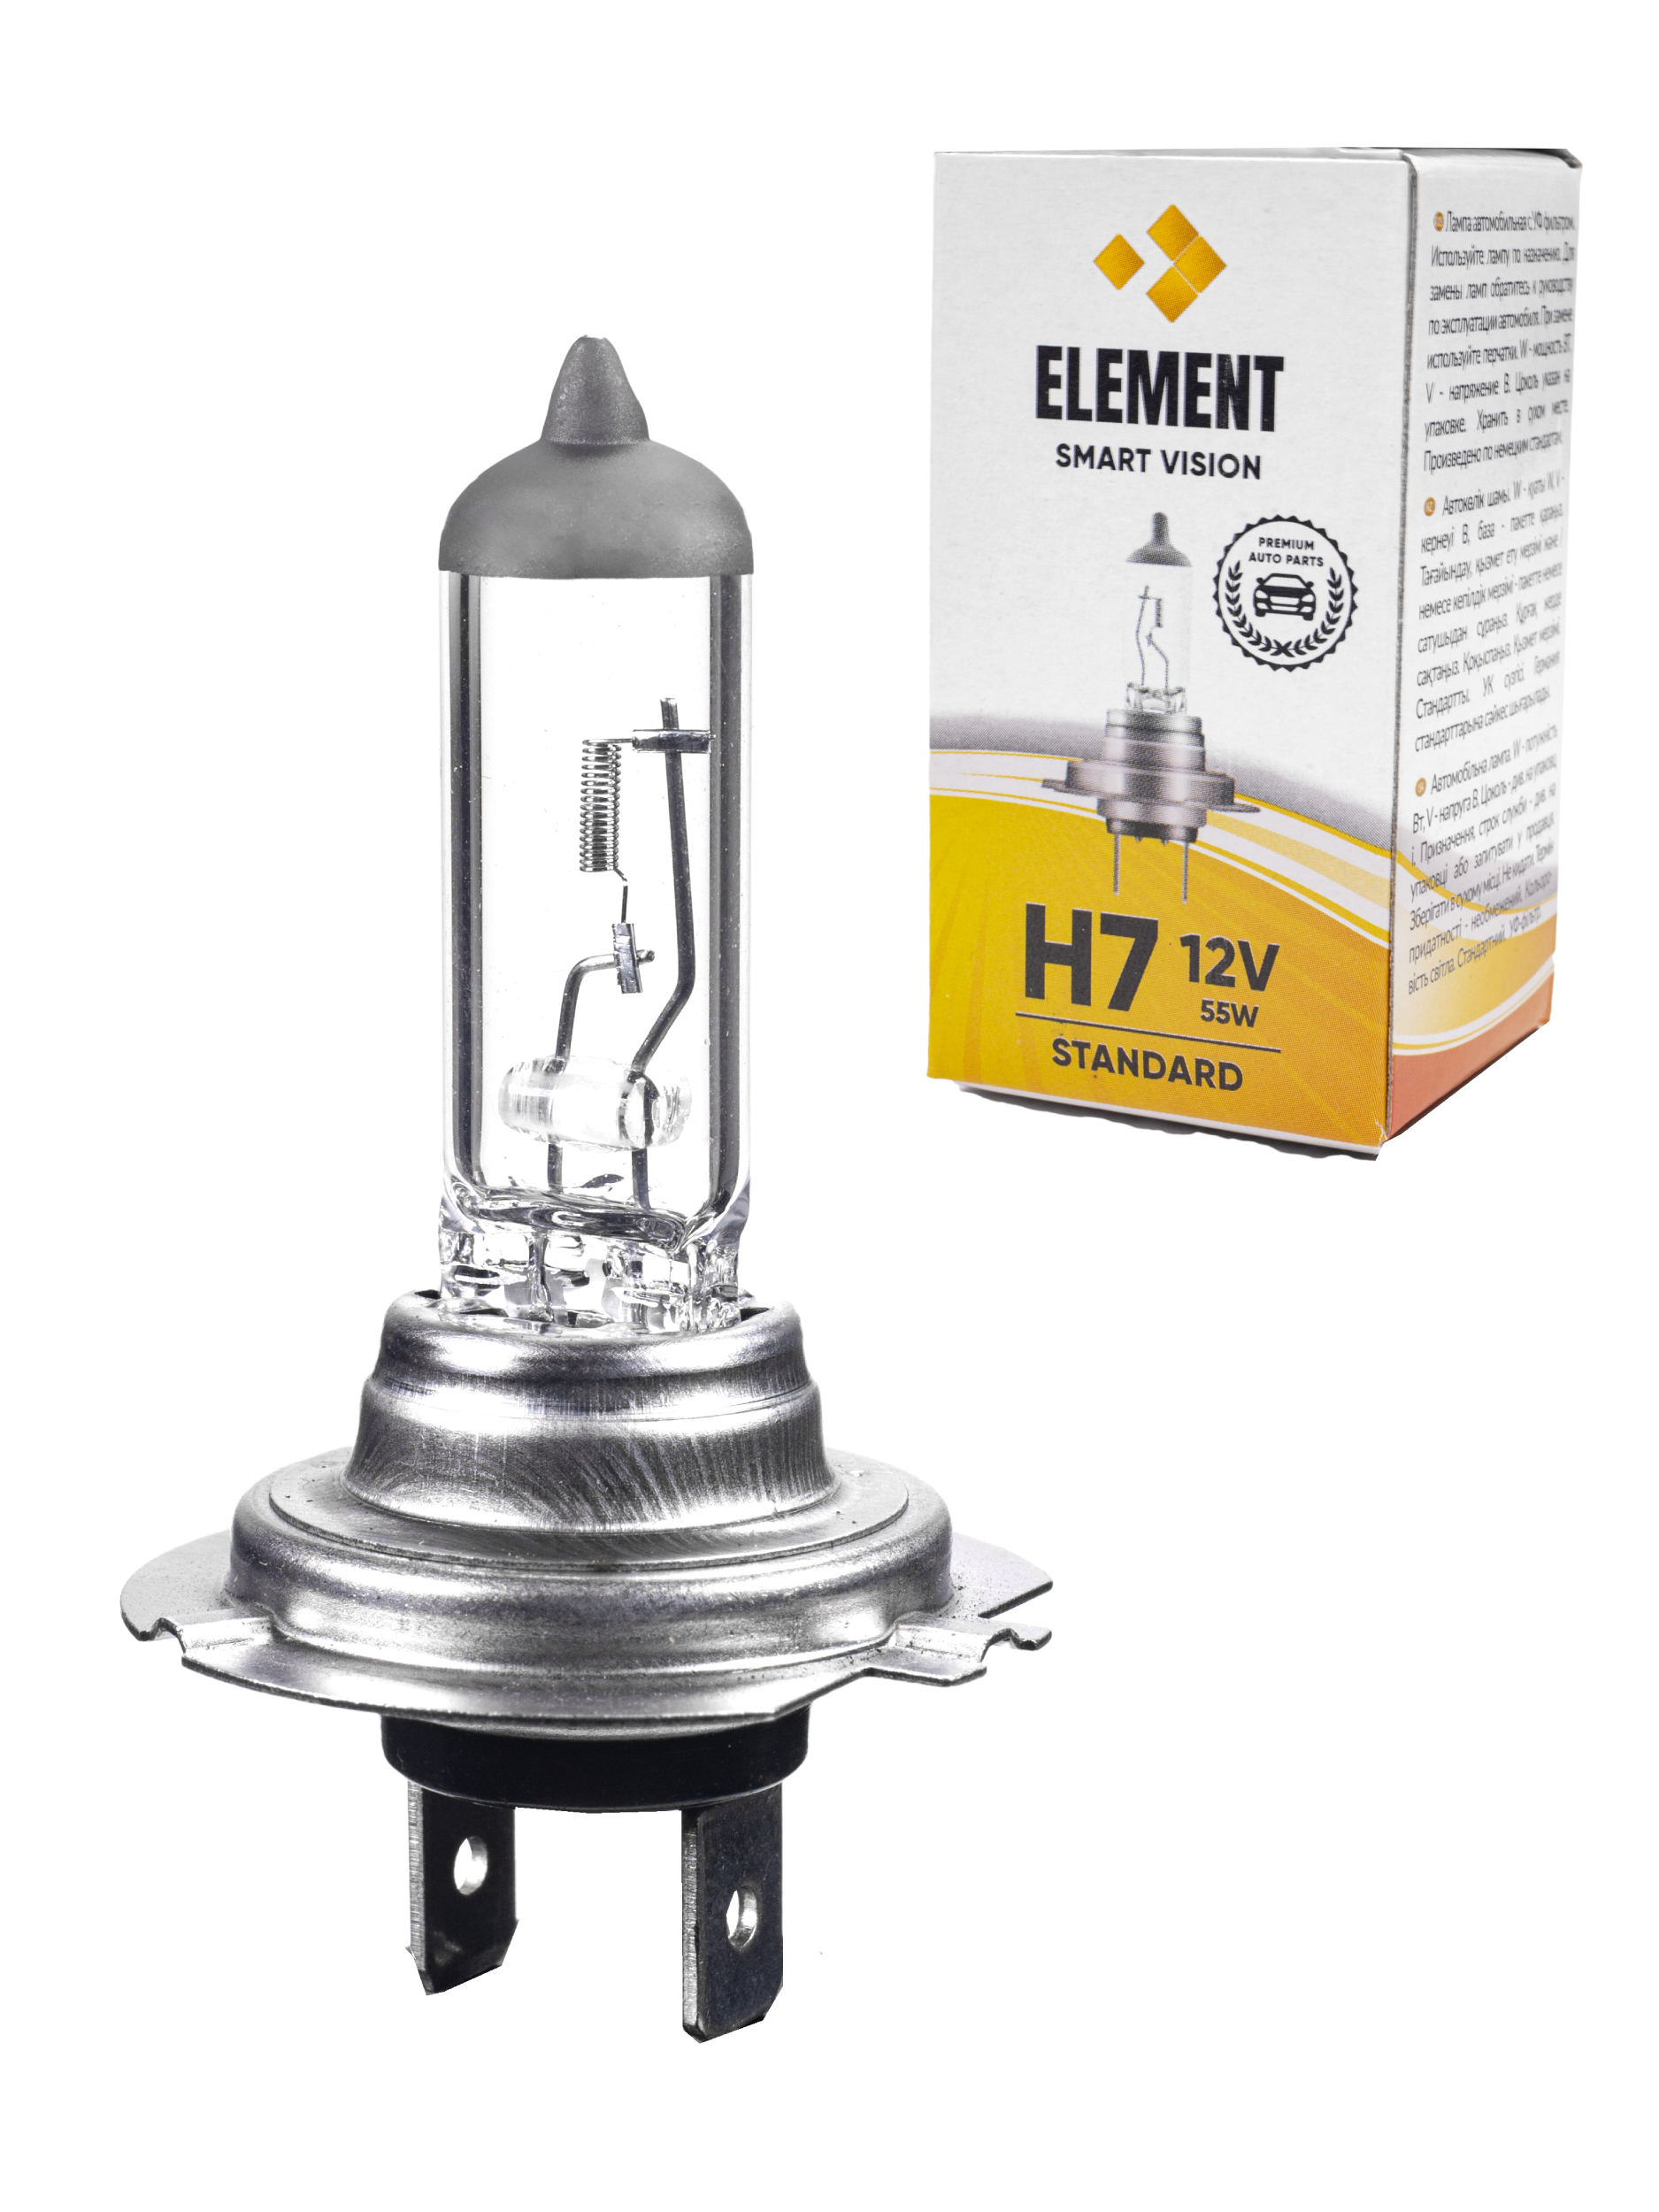 Галогенная лампа Element с цоколем H7, 12V, 55W. Аналог лампы Osram 64210